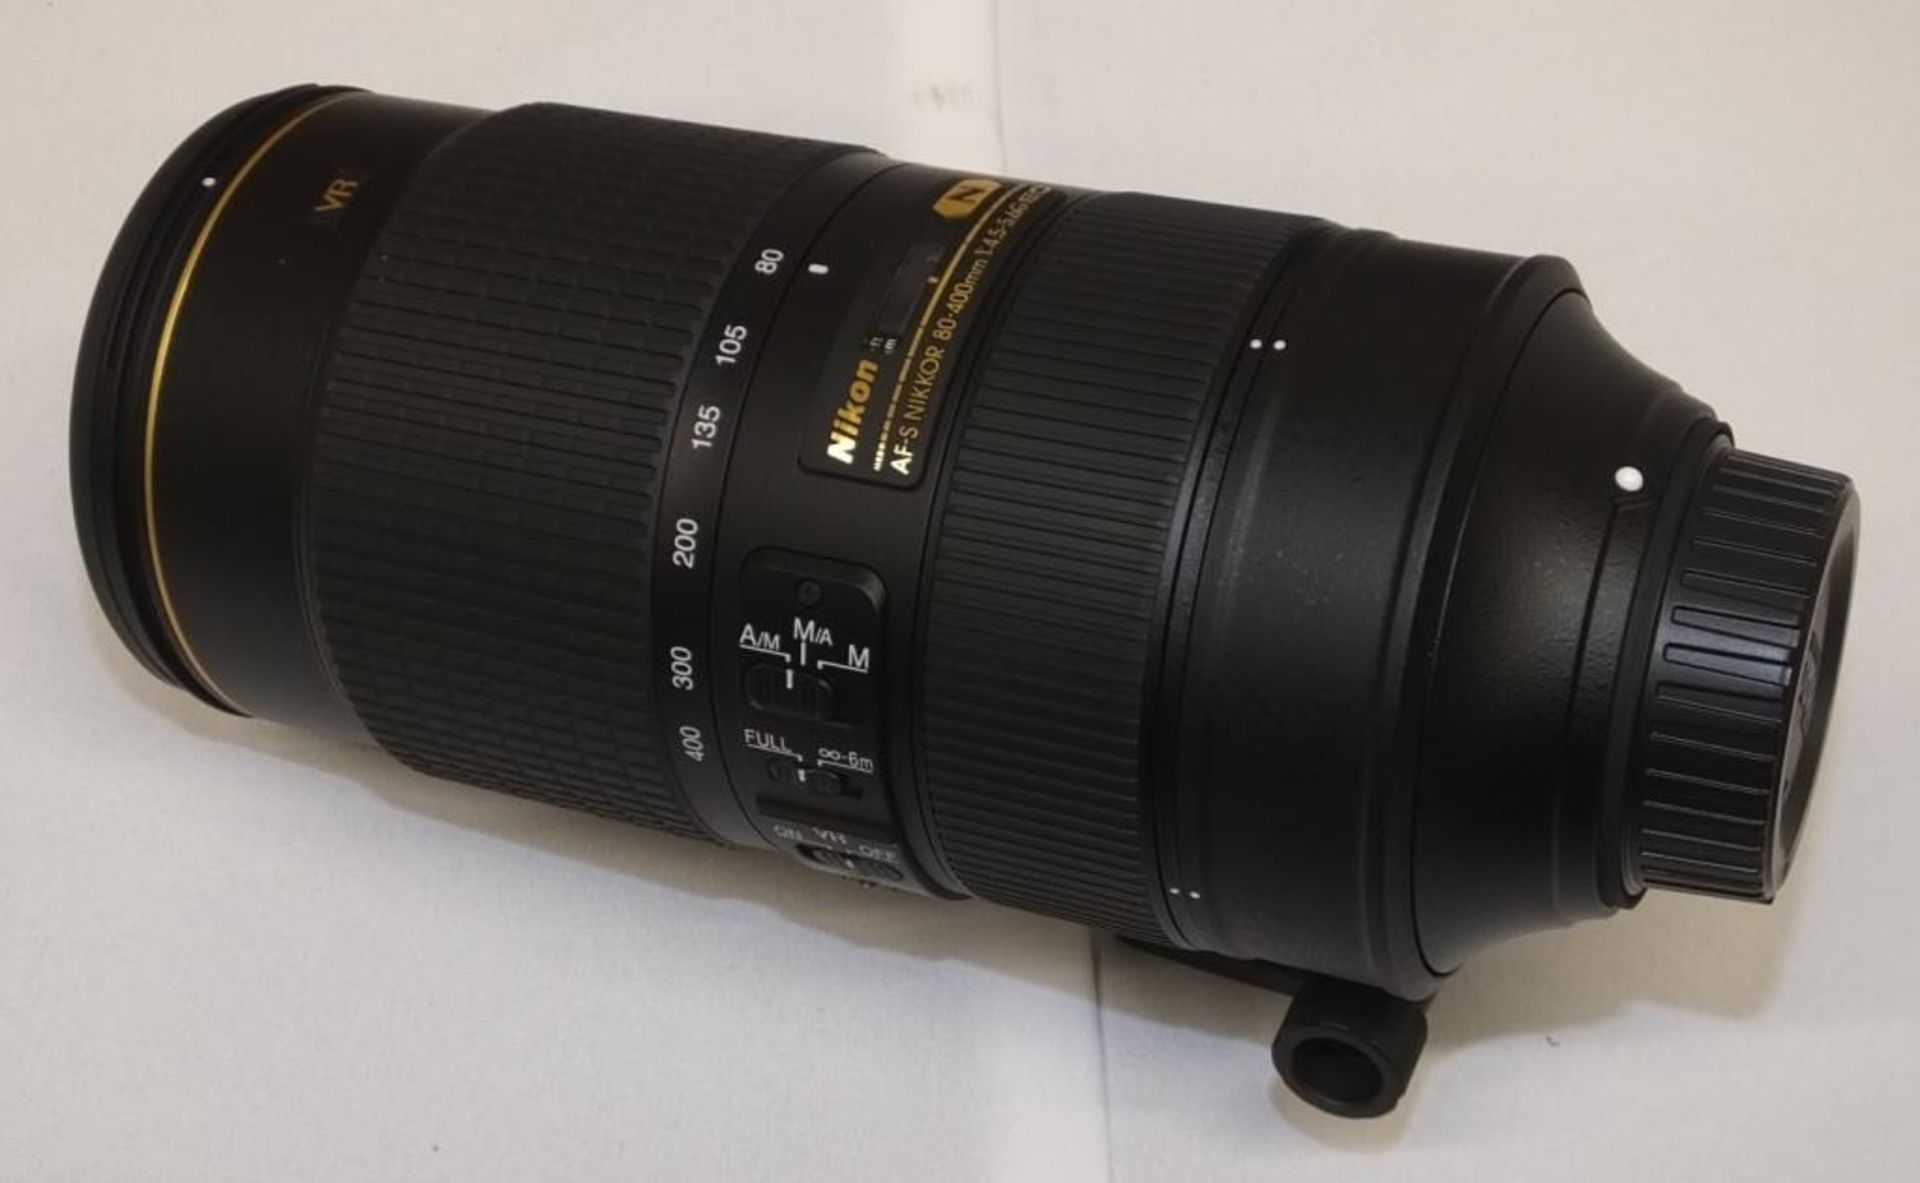 Nikon AF-S Nikkor 80-400mm F/4.5-5.6G ED VR Lens - Serial No. 268935 with Nikon CL-M2 Case - Image 2 of 7